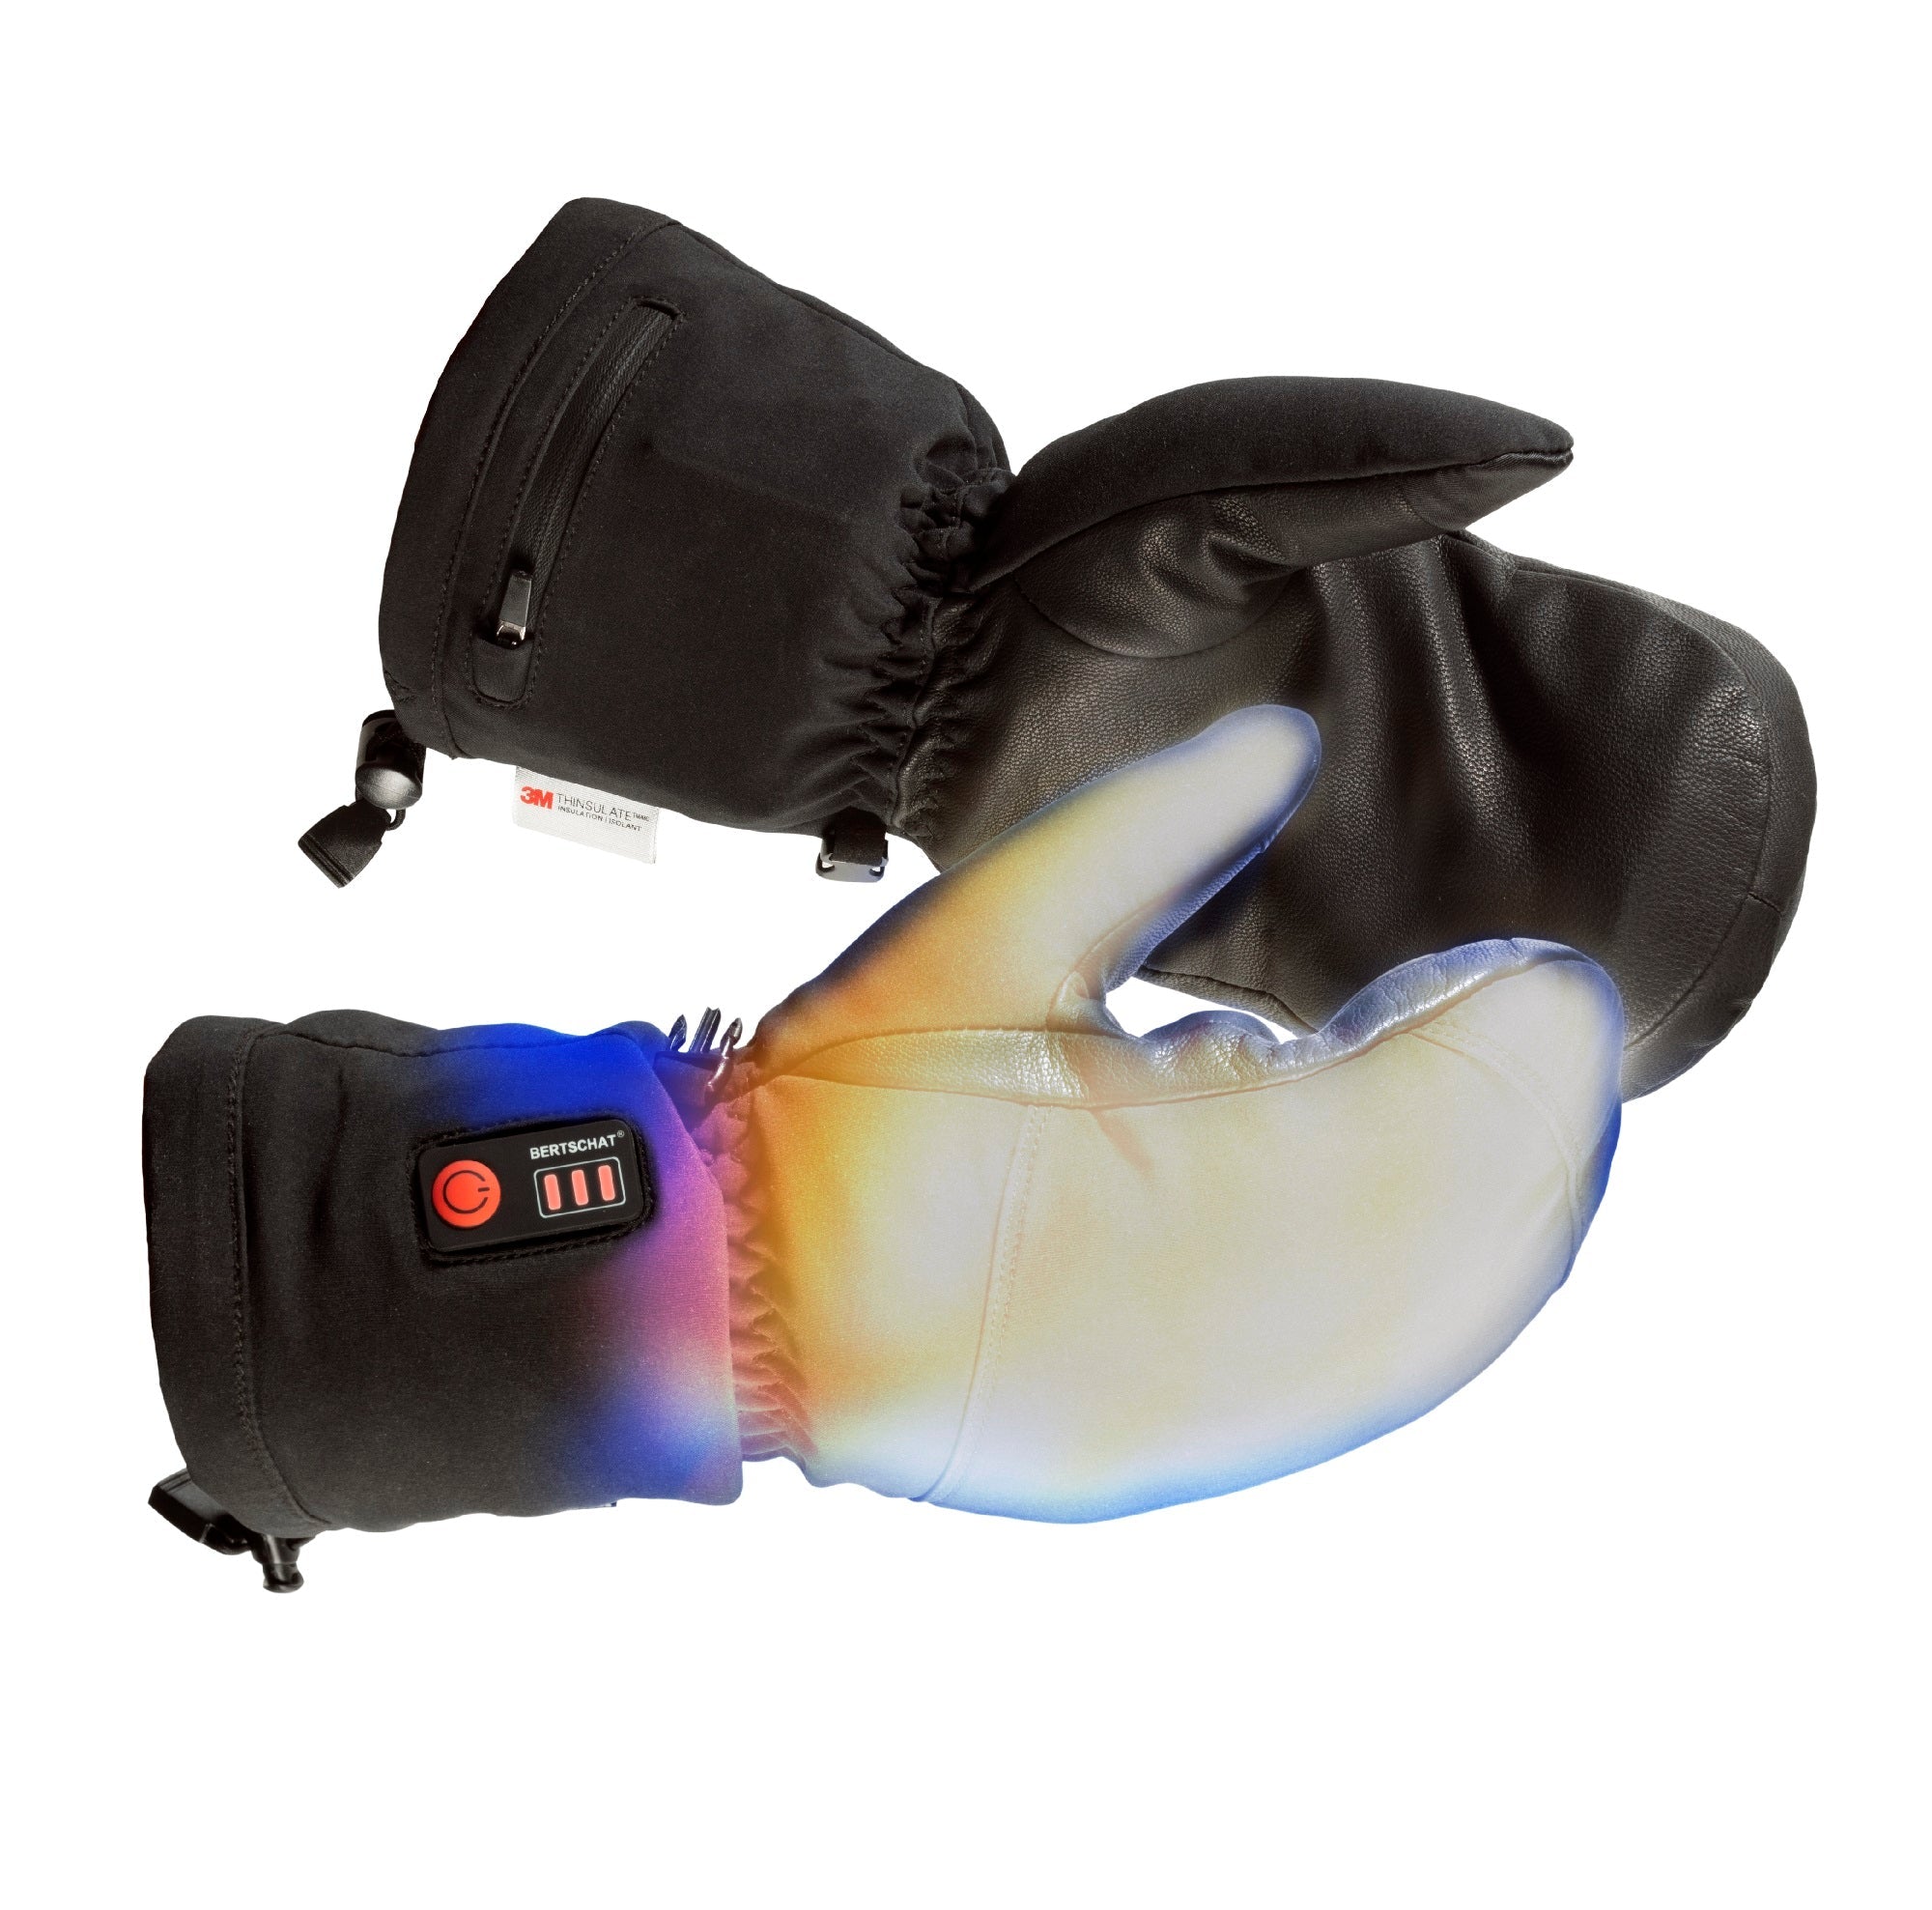 Moufle Unisexe chauffantes Convertible avec sous gant tactile intégré et  chaufferettes